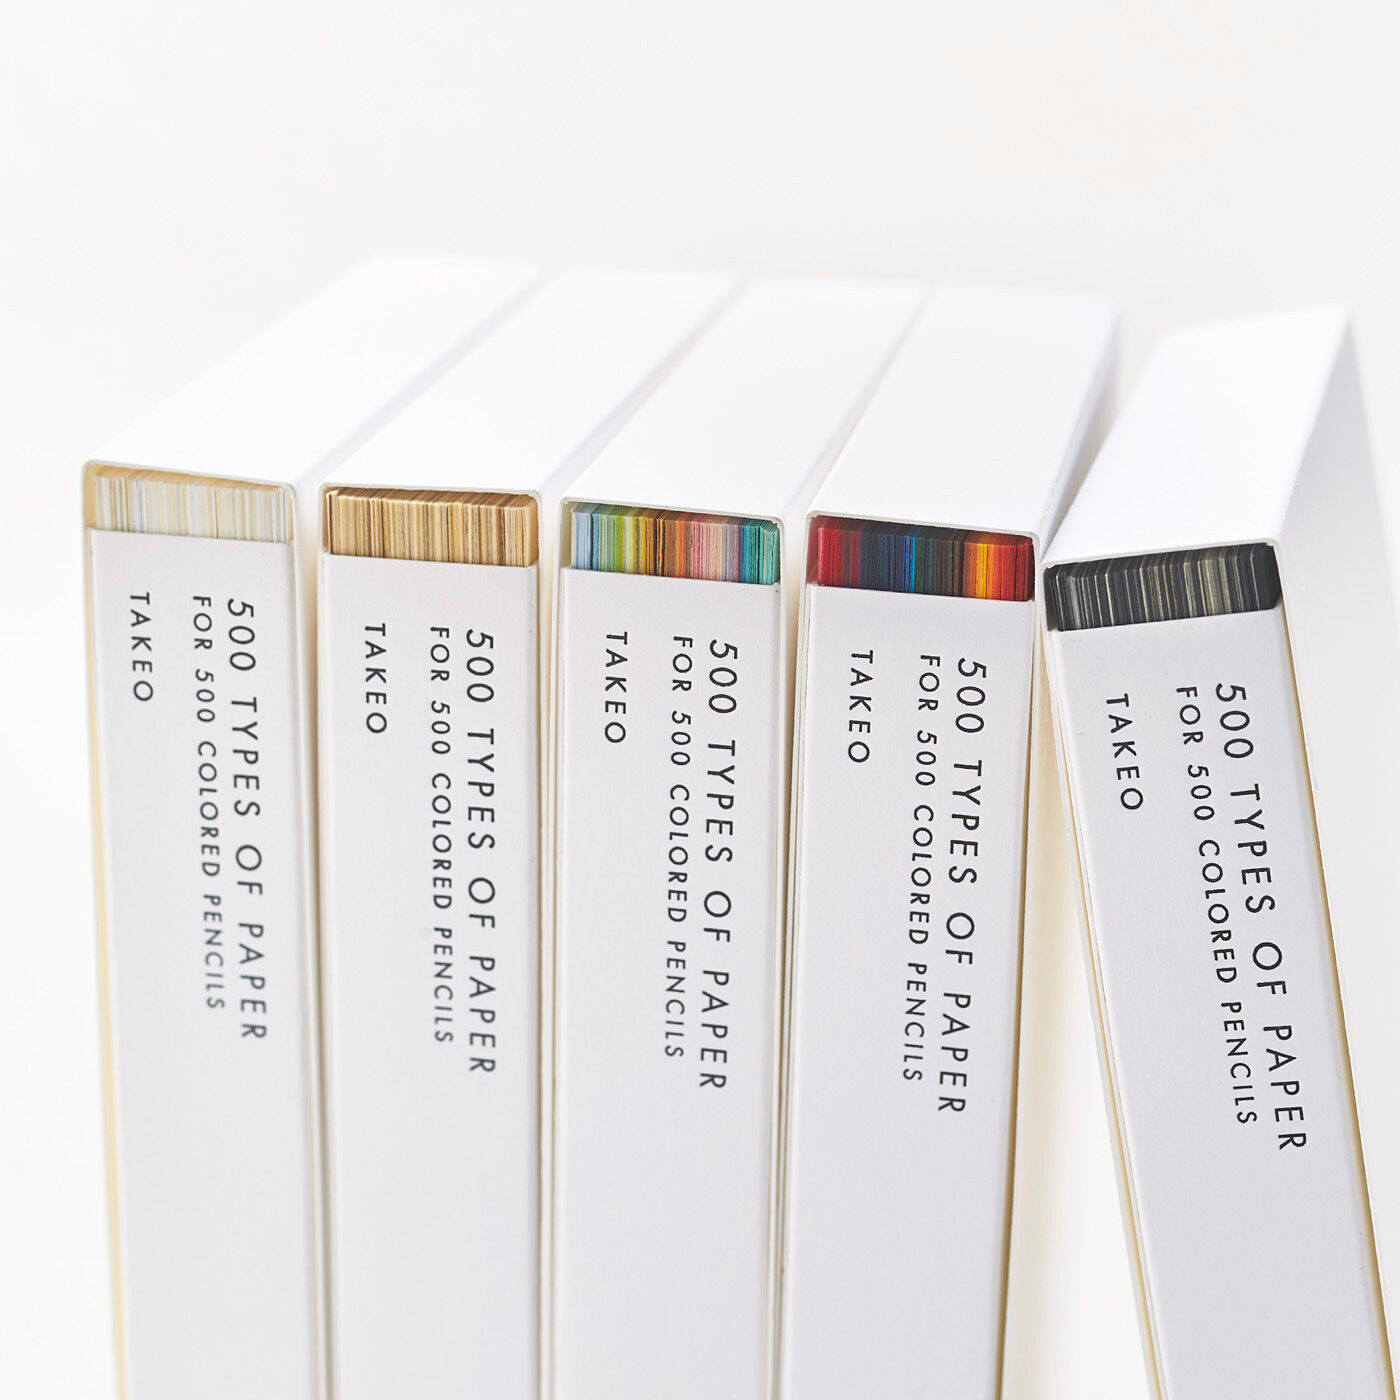 フェリシモコレクション|500色の色えんぴつ　TOKYO SEEDS　紙の専門商社 竹尾が選ぶ　500種類の紙セットの会